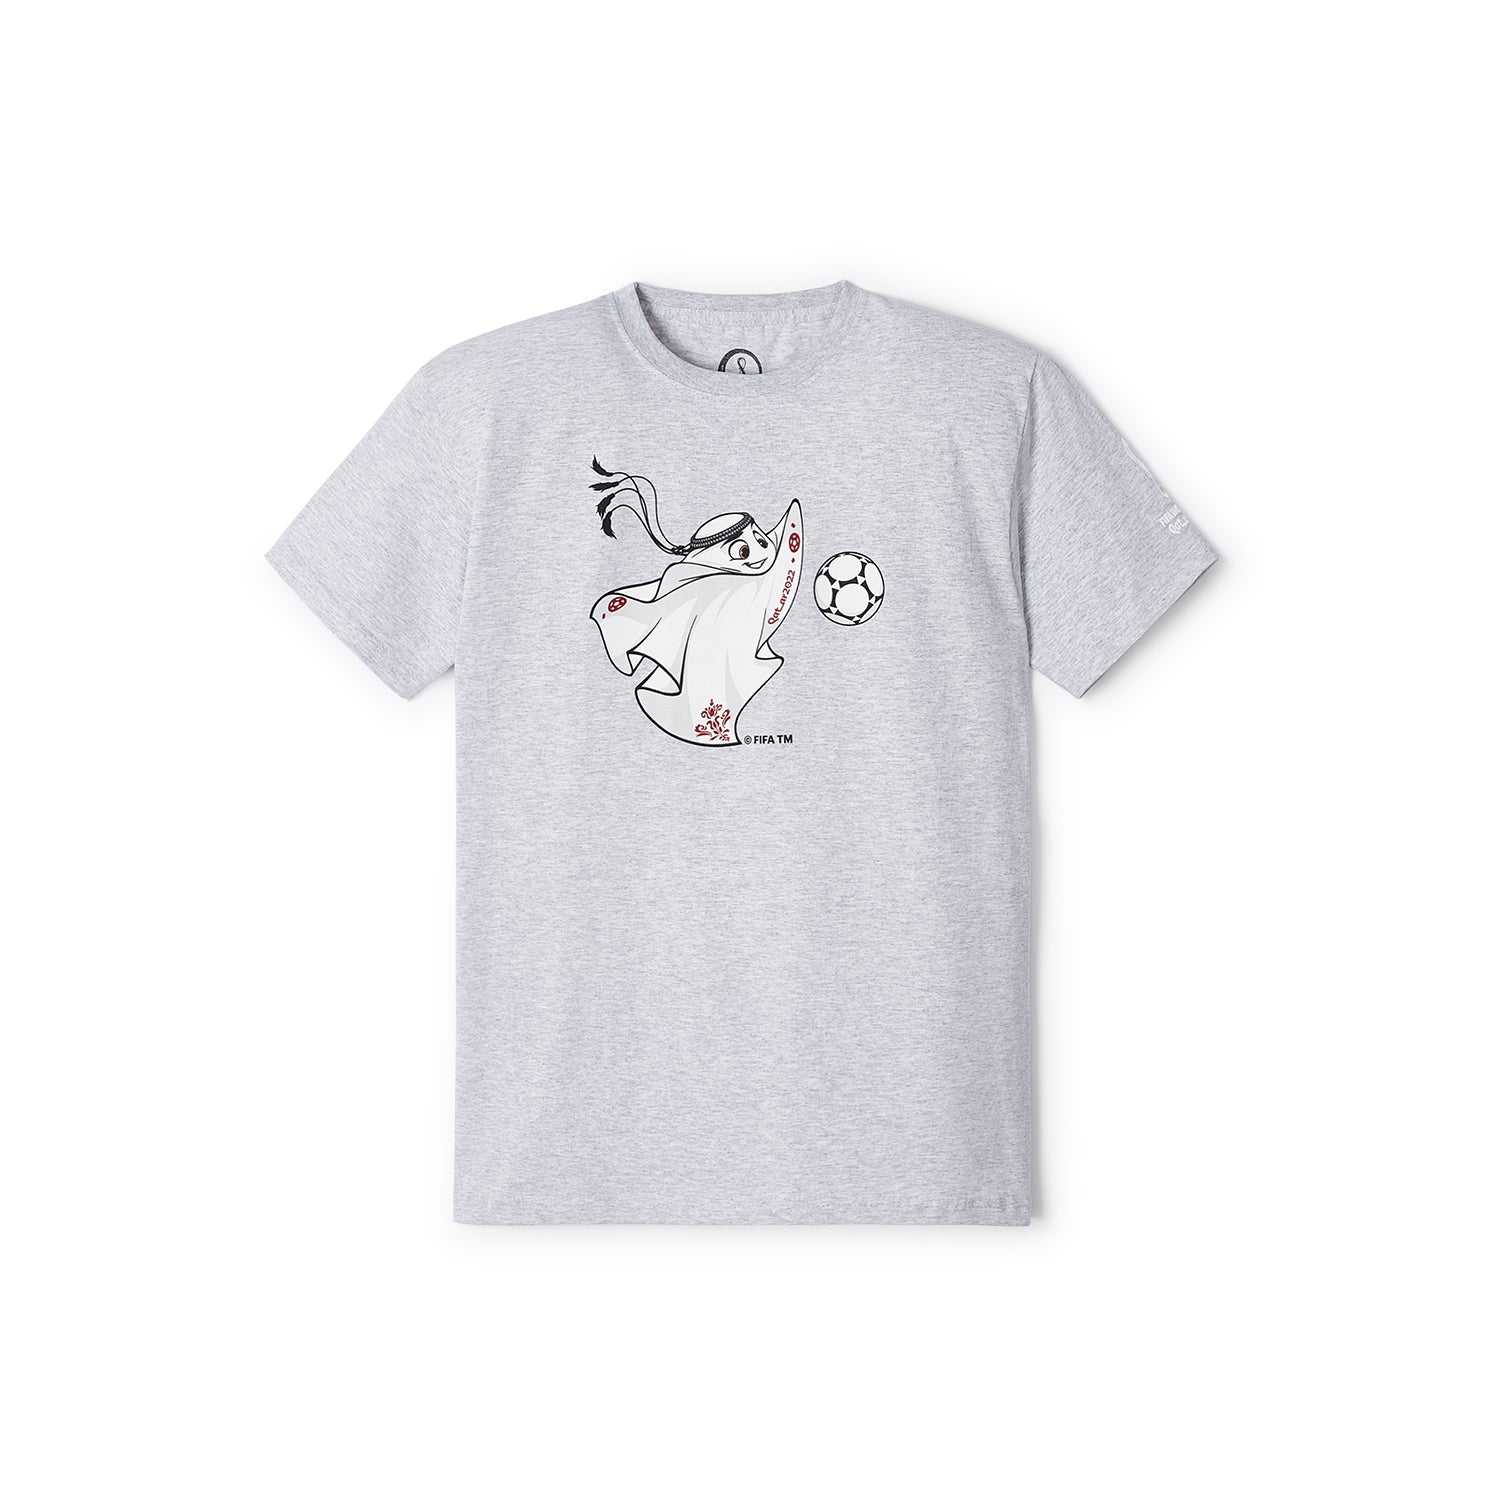 FIFA Kids Grey Qatar Mascot T-Shirt